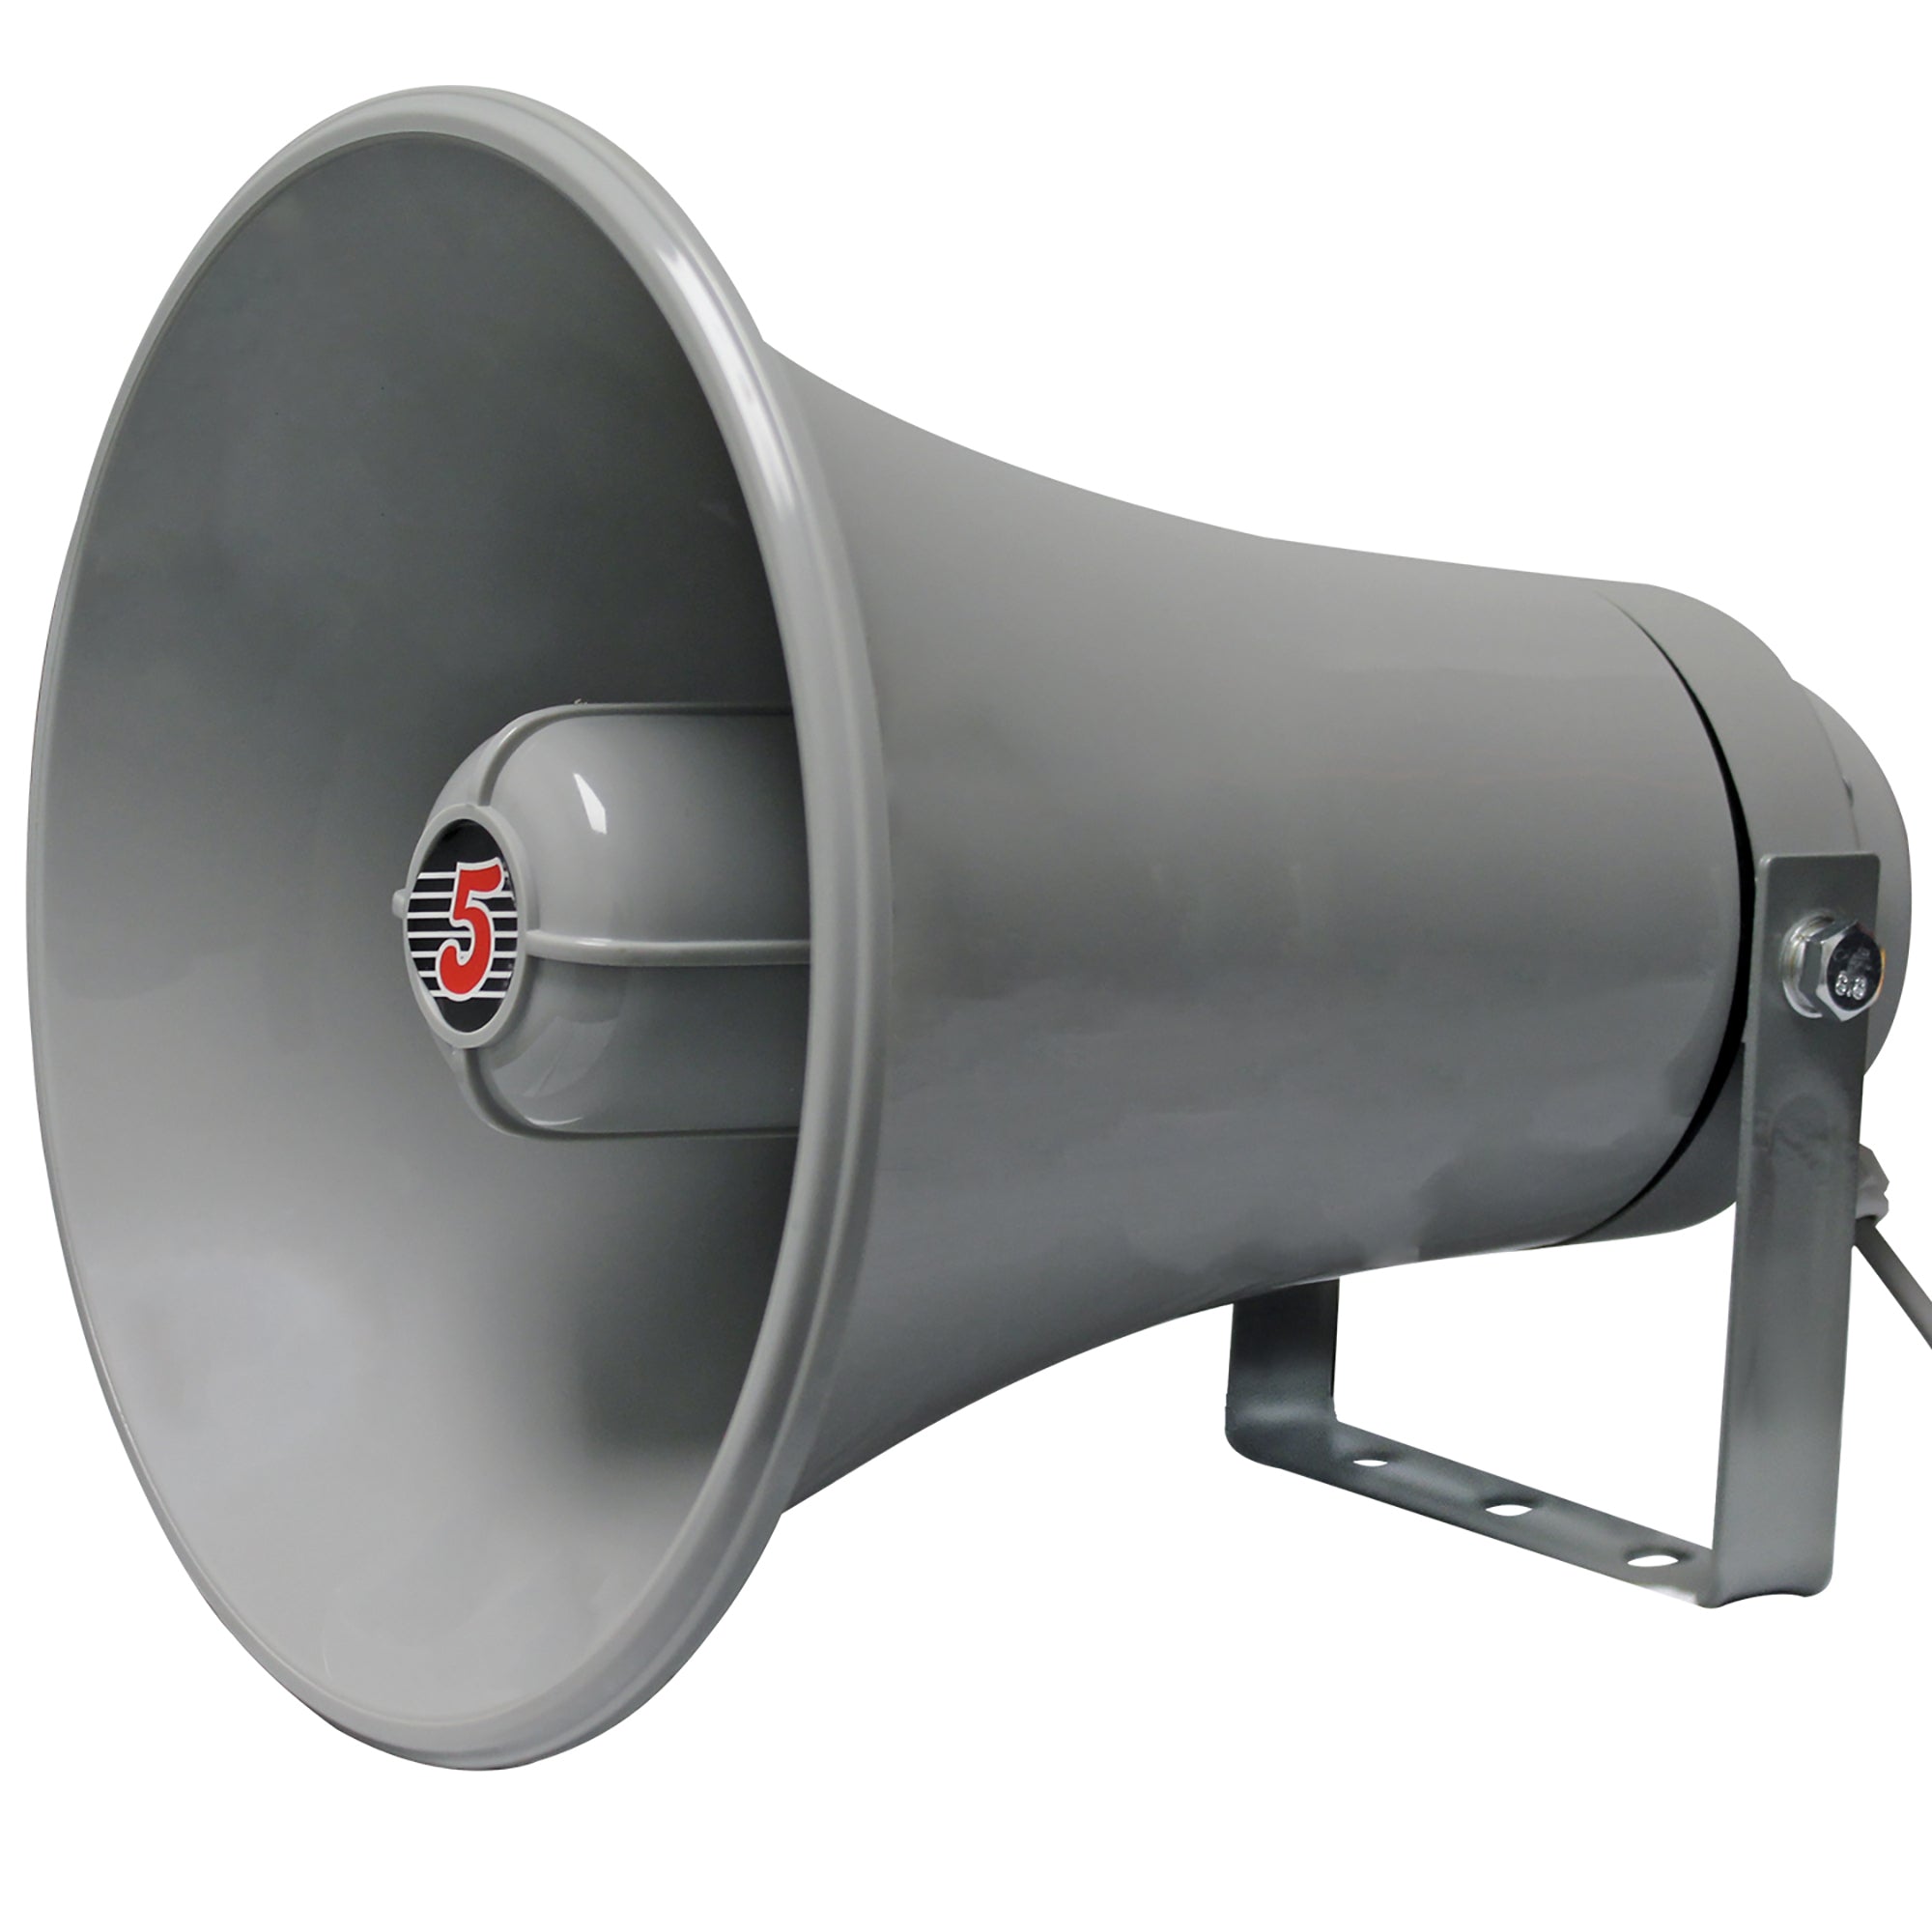 5 CORE Paging PA Horn Speaker Weatherproof 9 Inch Indoor Outdoor 20 Watt RMS Loud Speakers